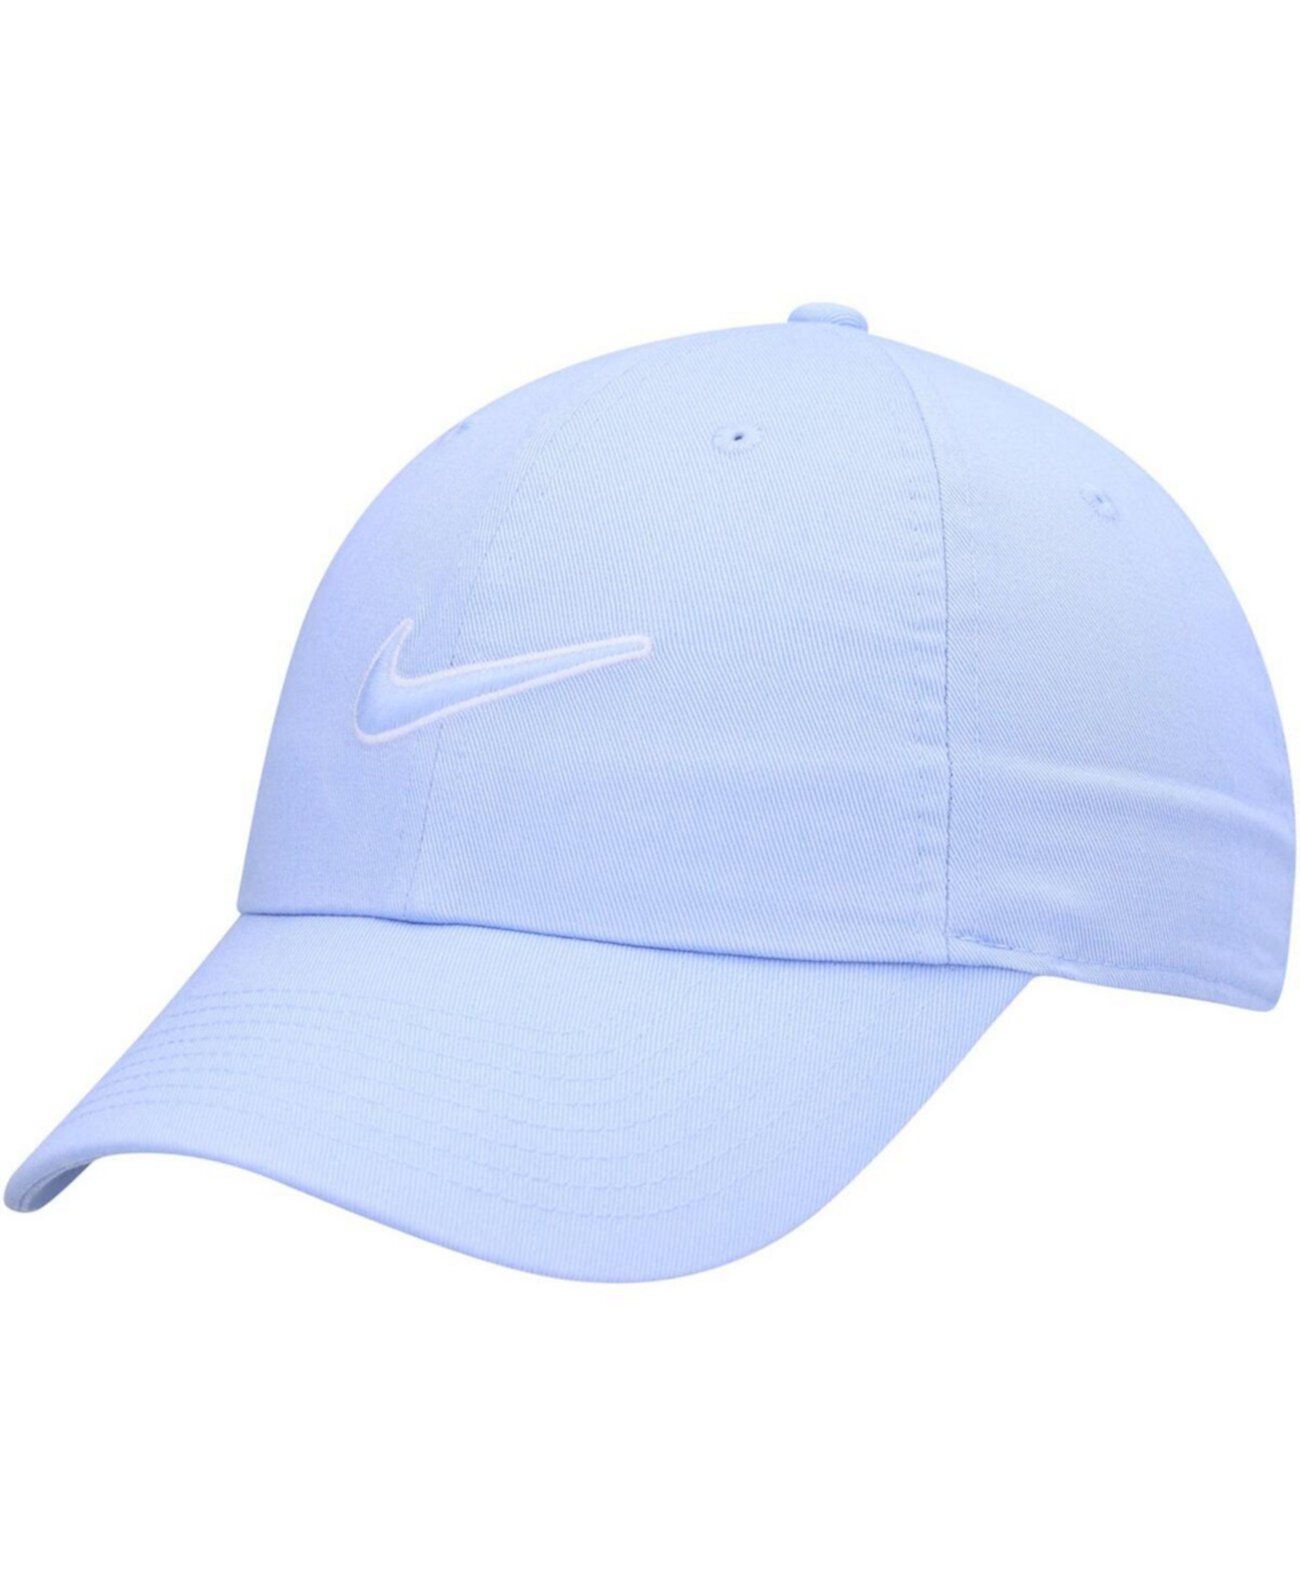 Мужская светло-голубая регулируемая кепка Heritage86 Essential с логотипом Nike